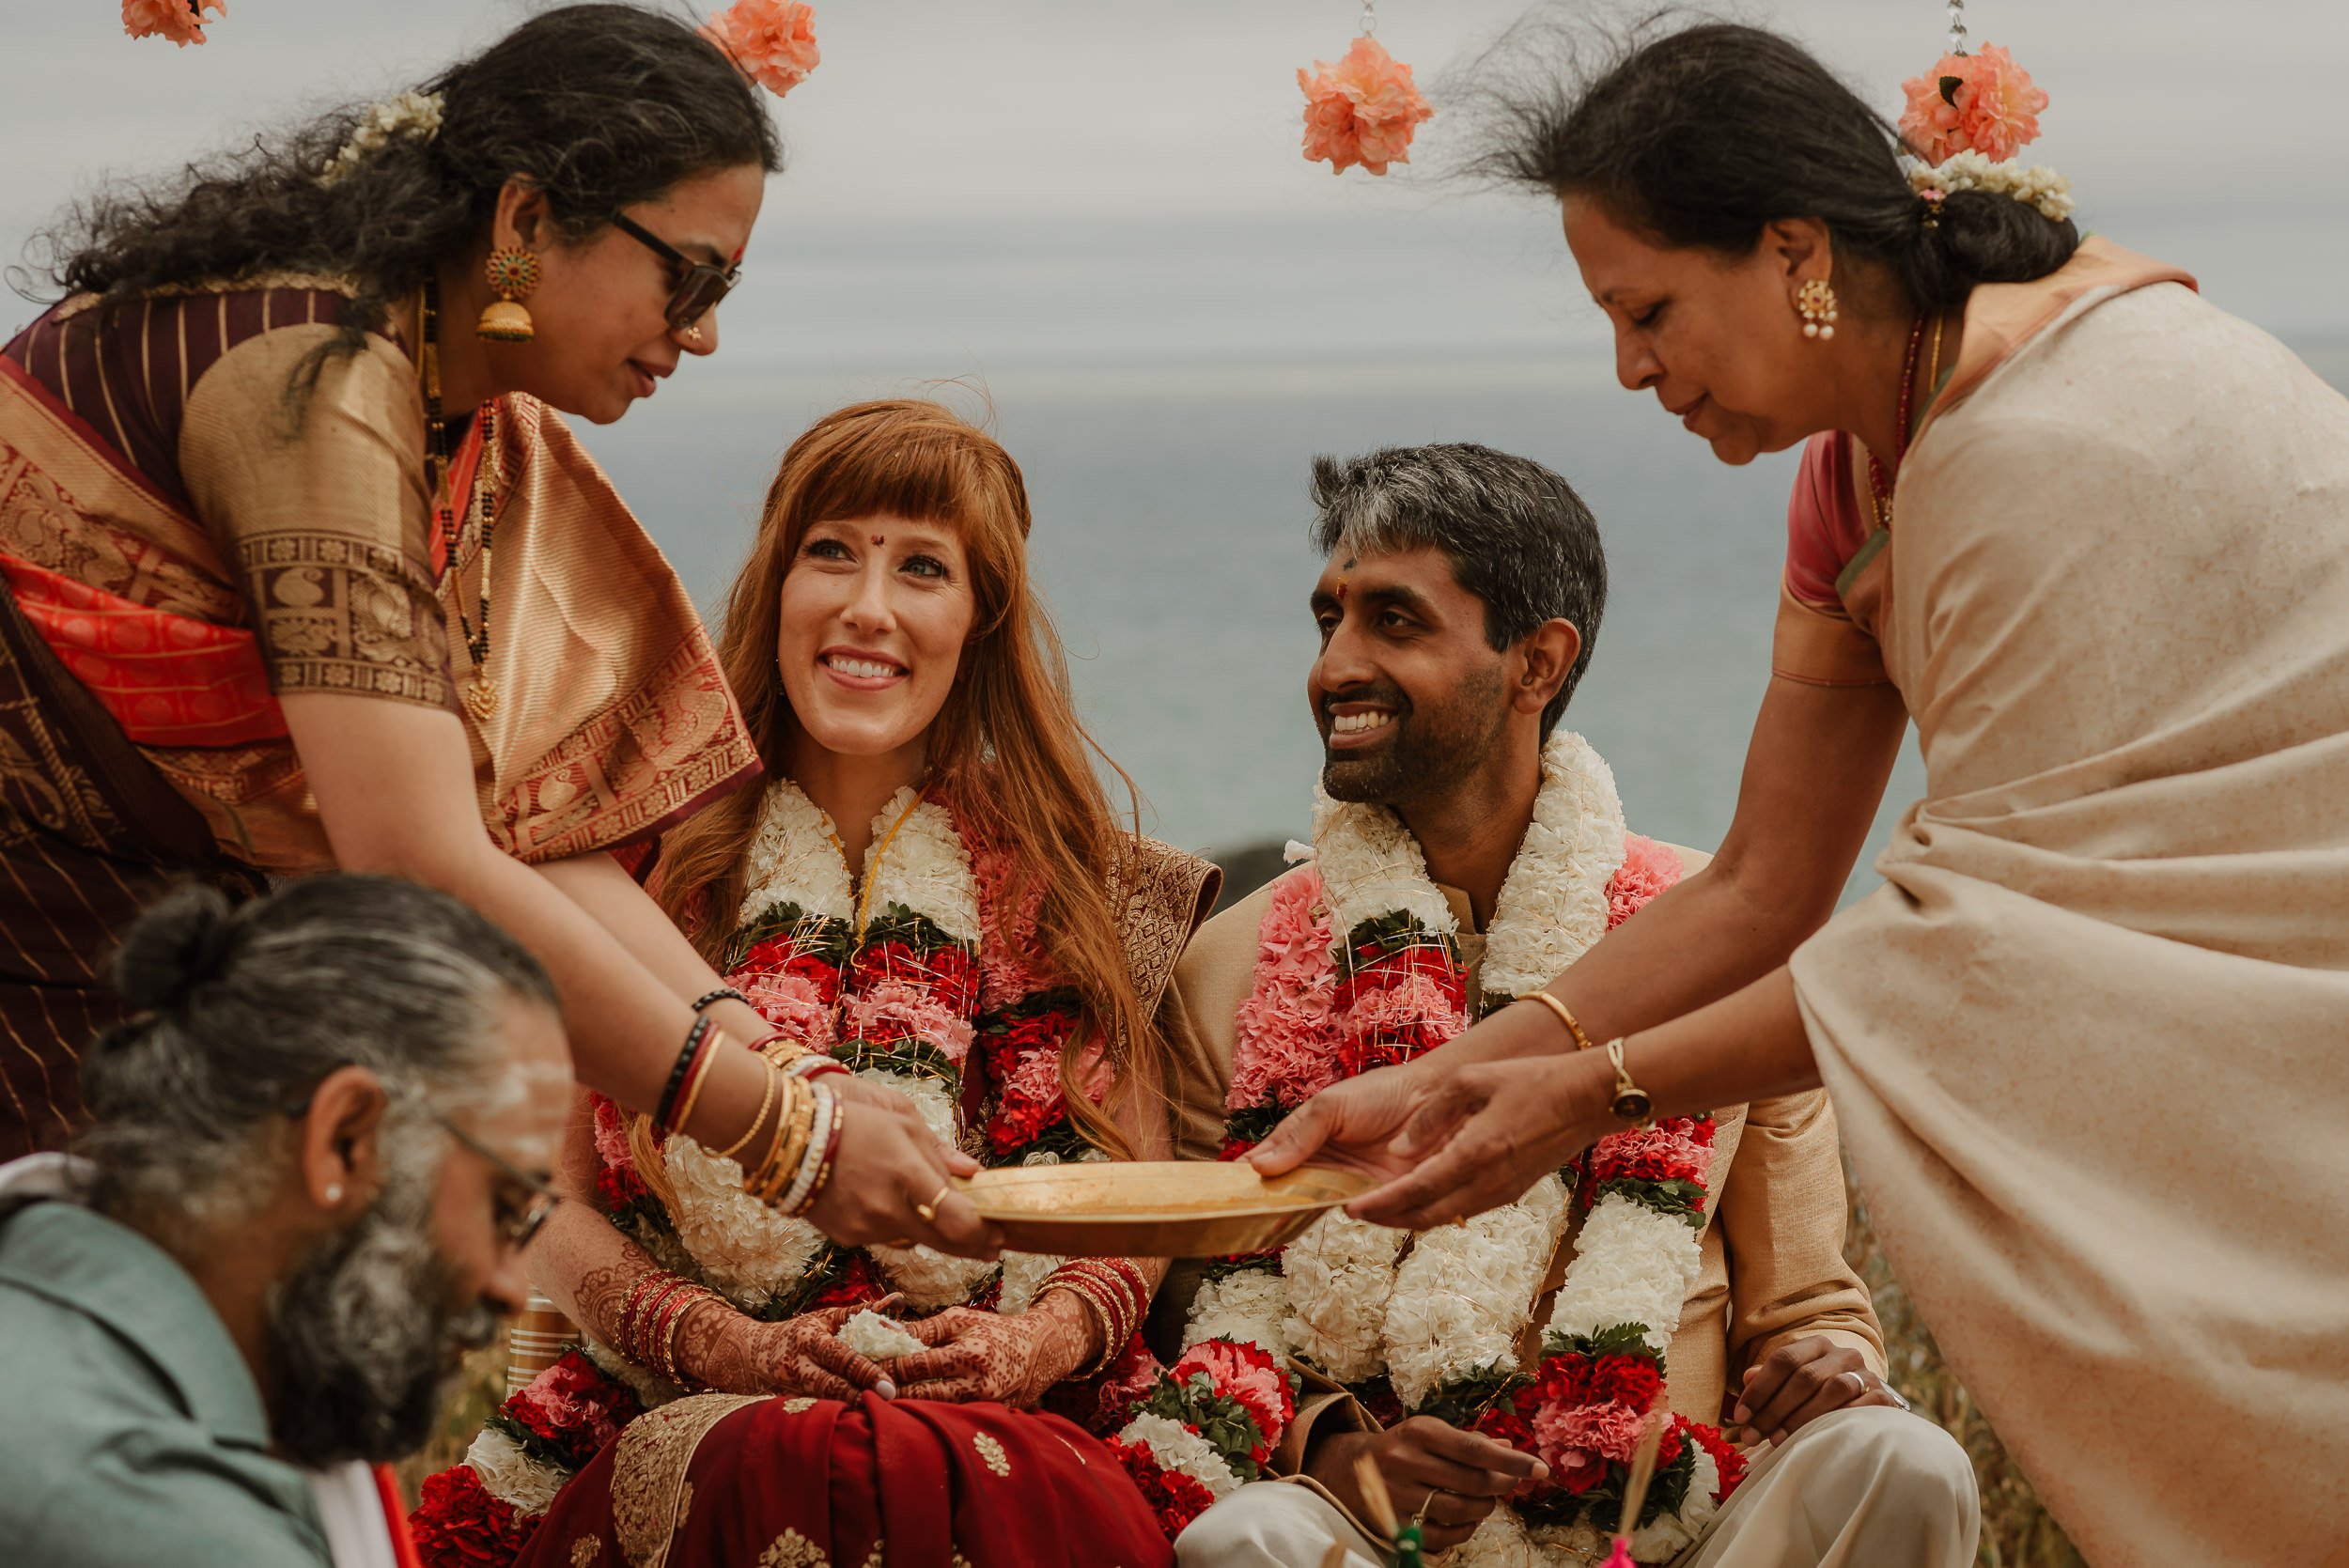 096-multicultural-hindu-indian-slide-ranch-wedding-muir-beach-vivianchen-0960.jpg